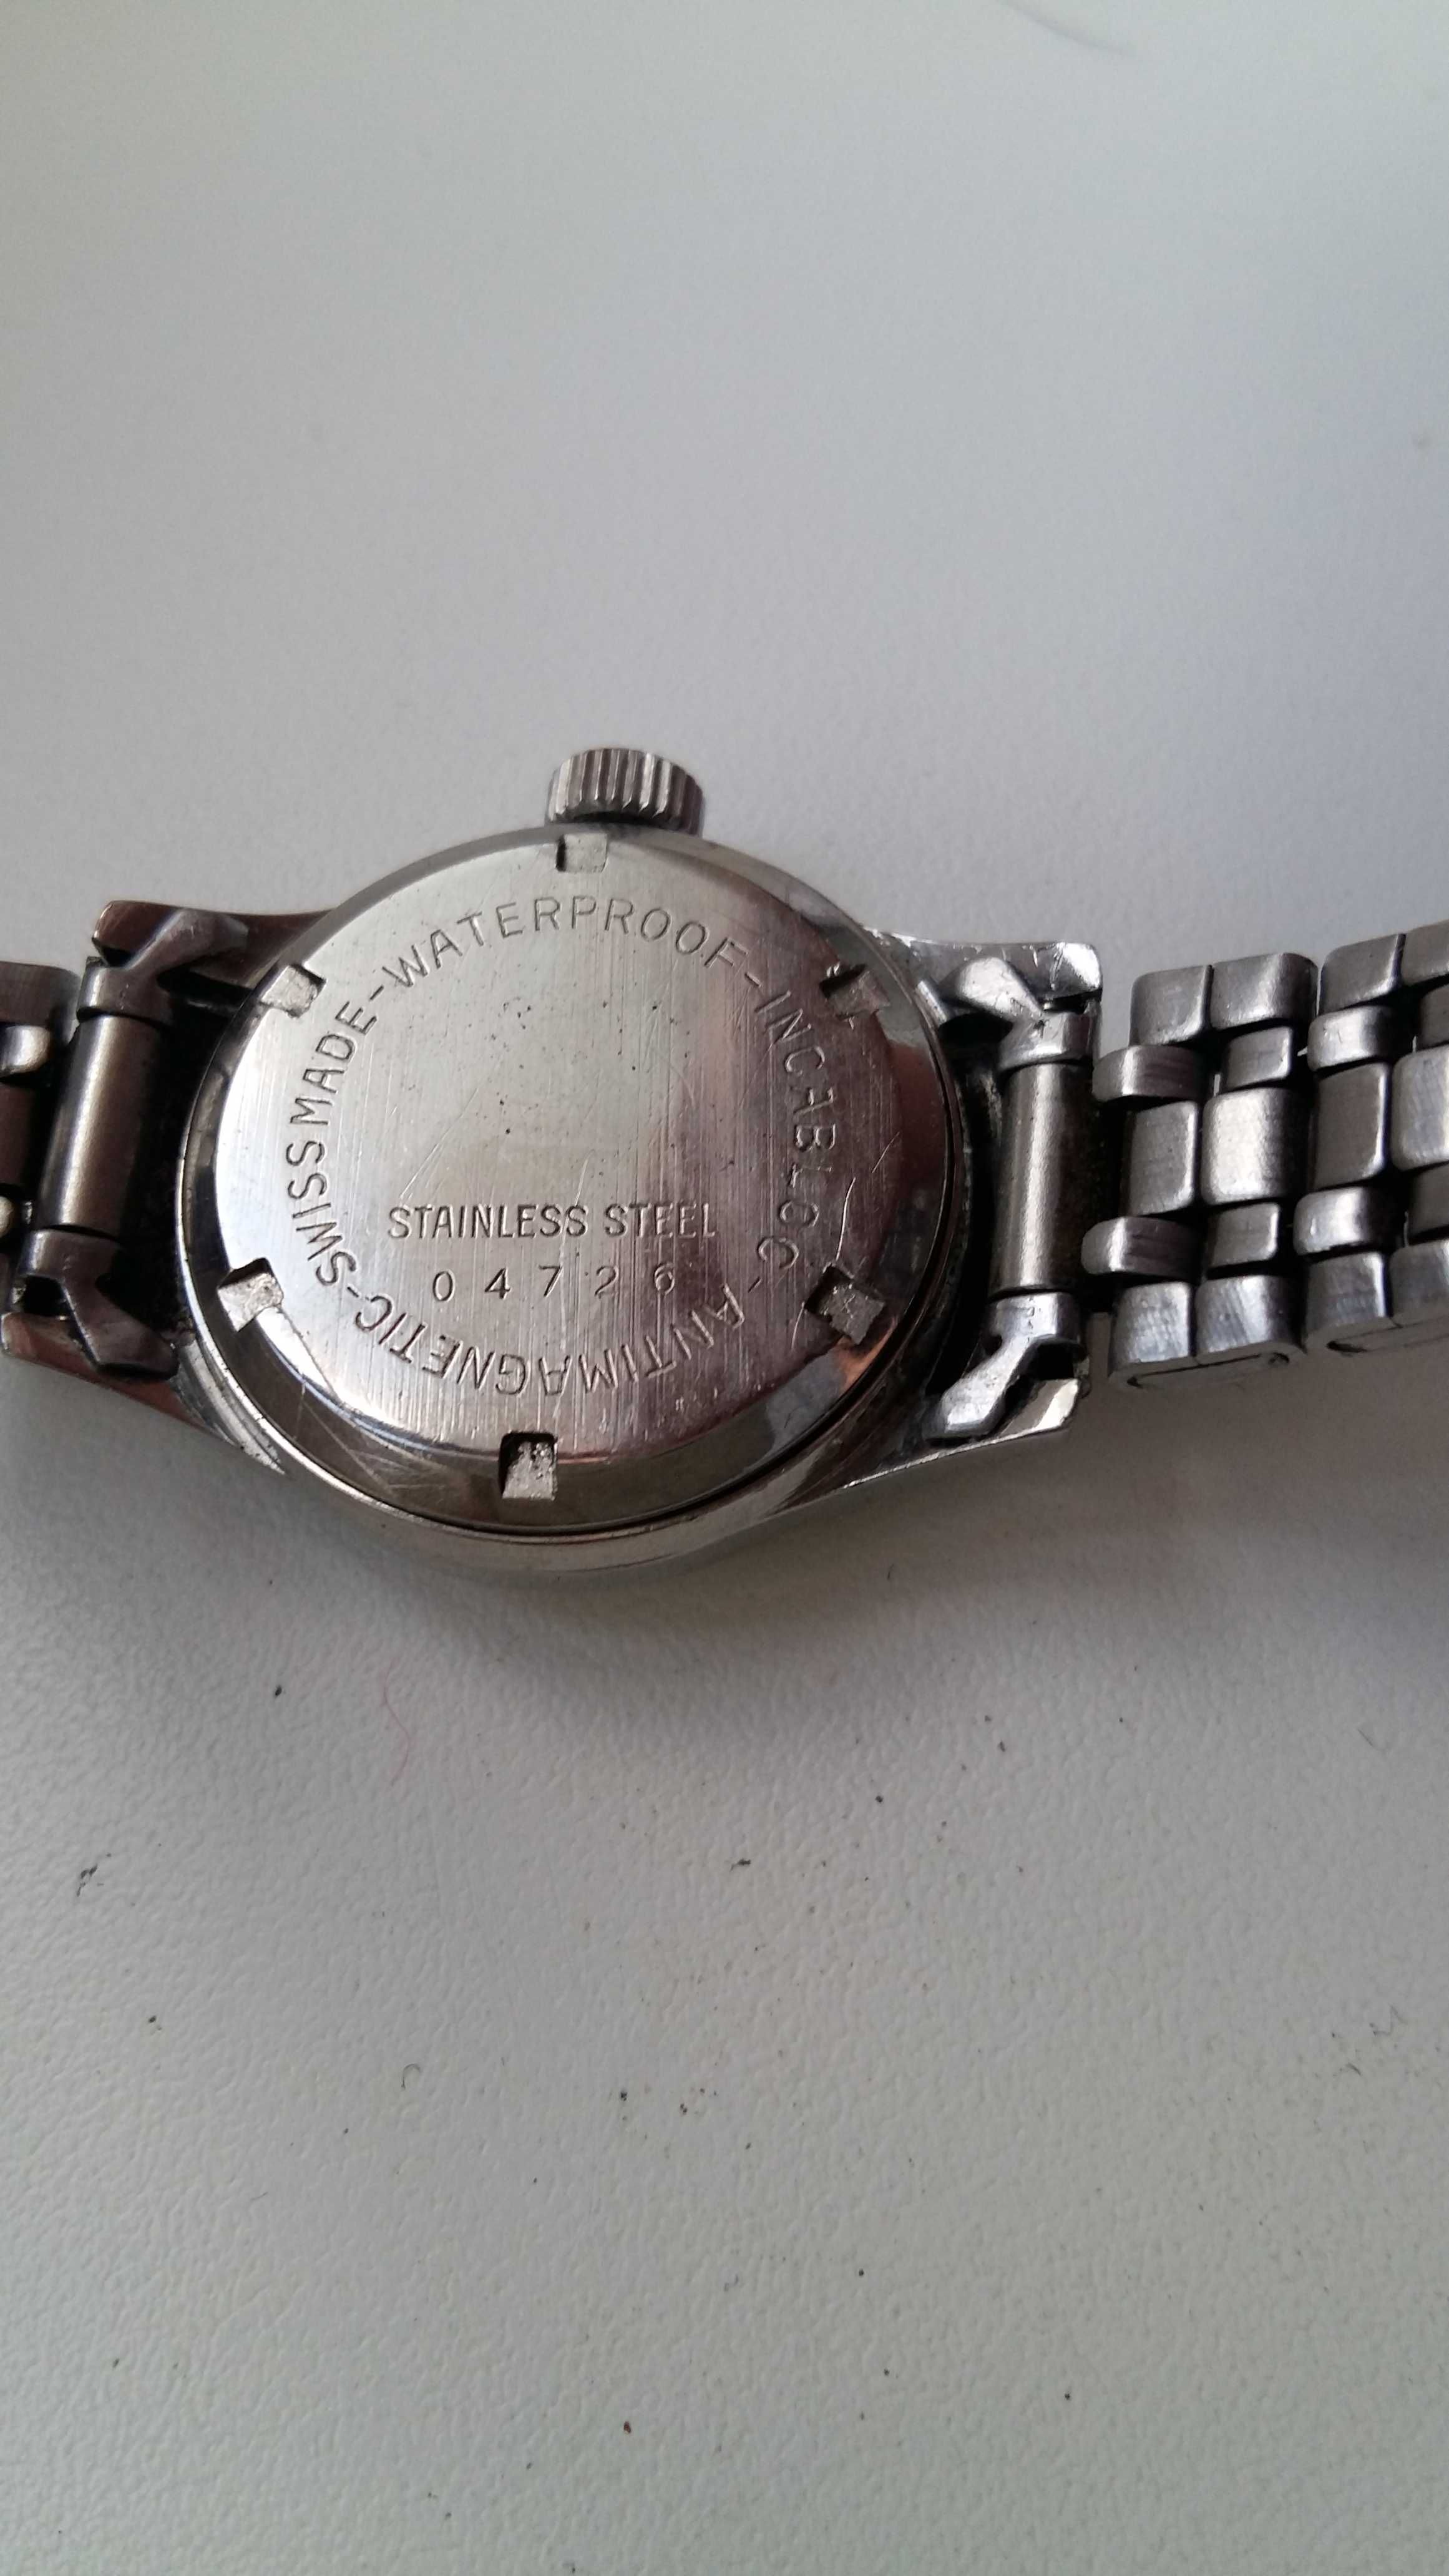 Zegarek Breitling 17 jewels stal nie srebro antyk Rarytas.